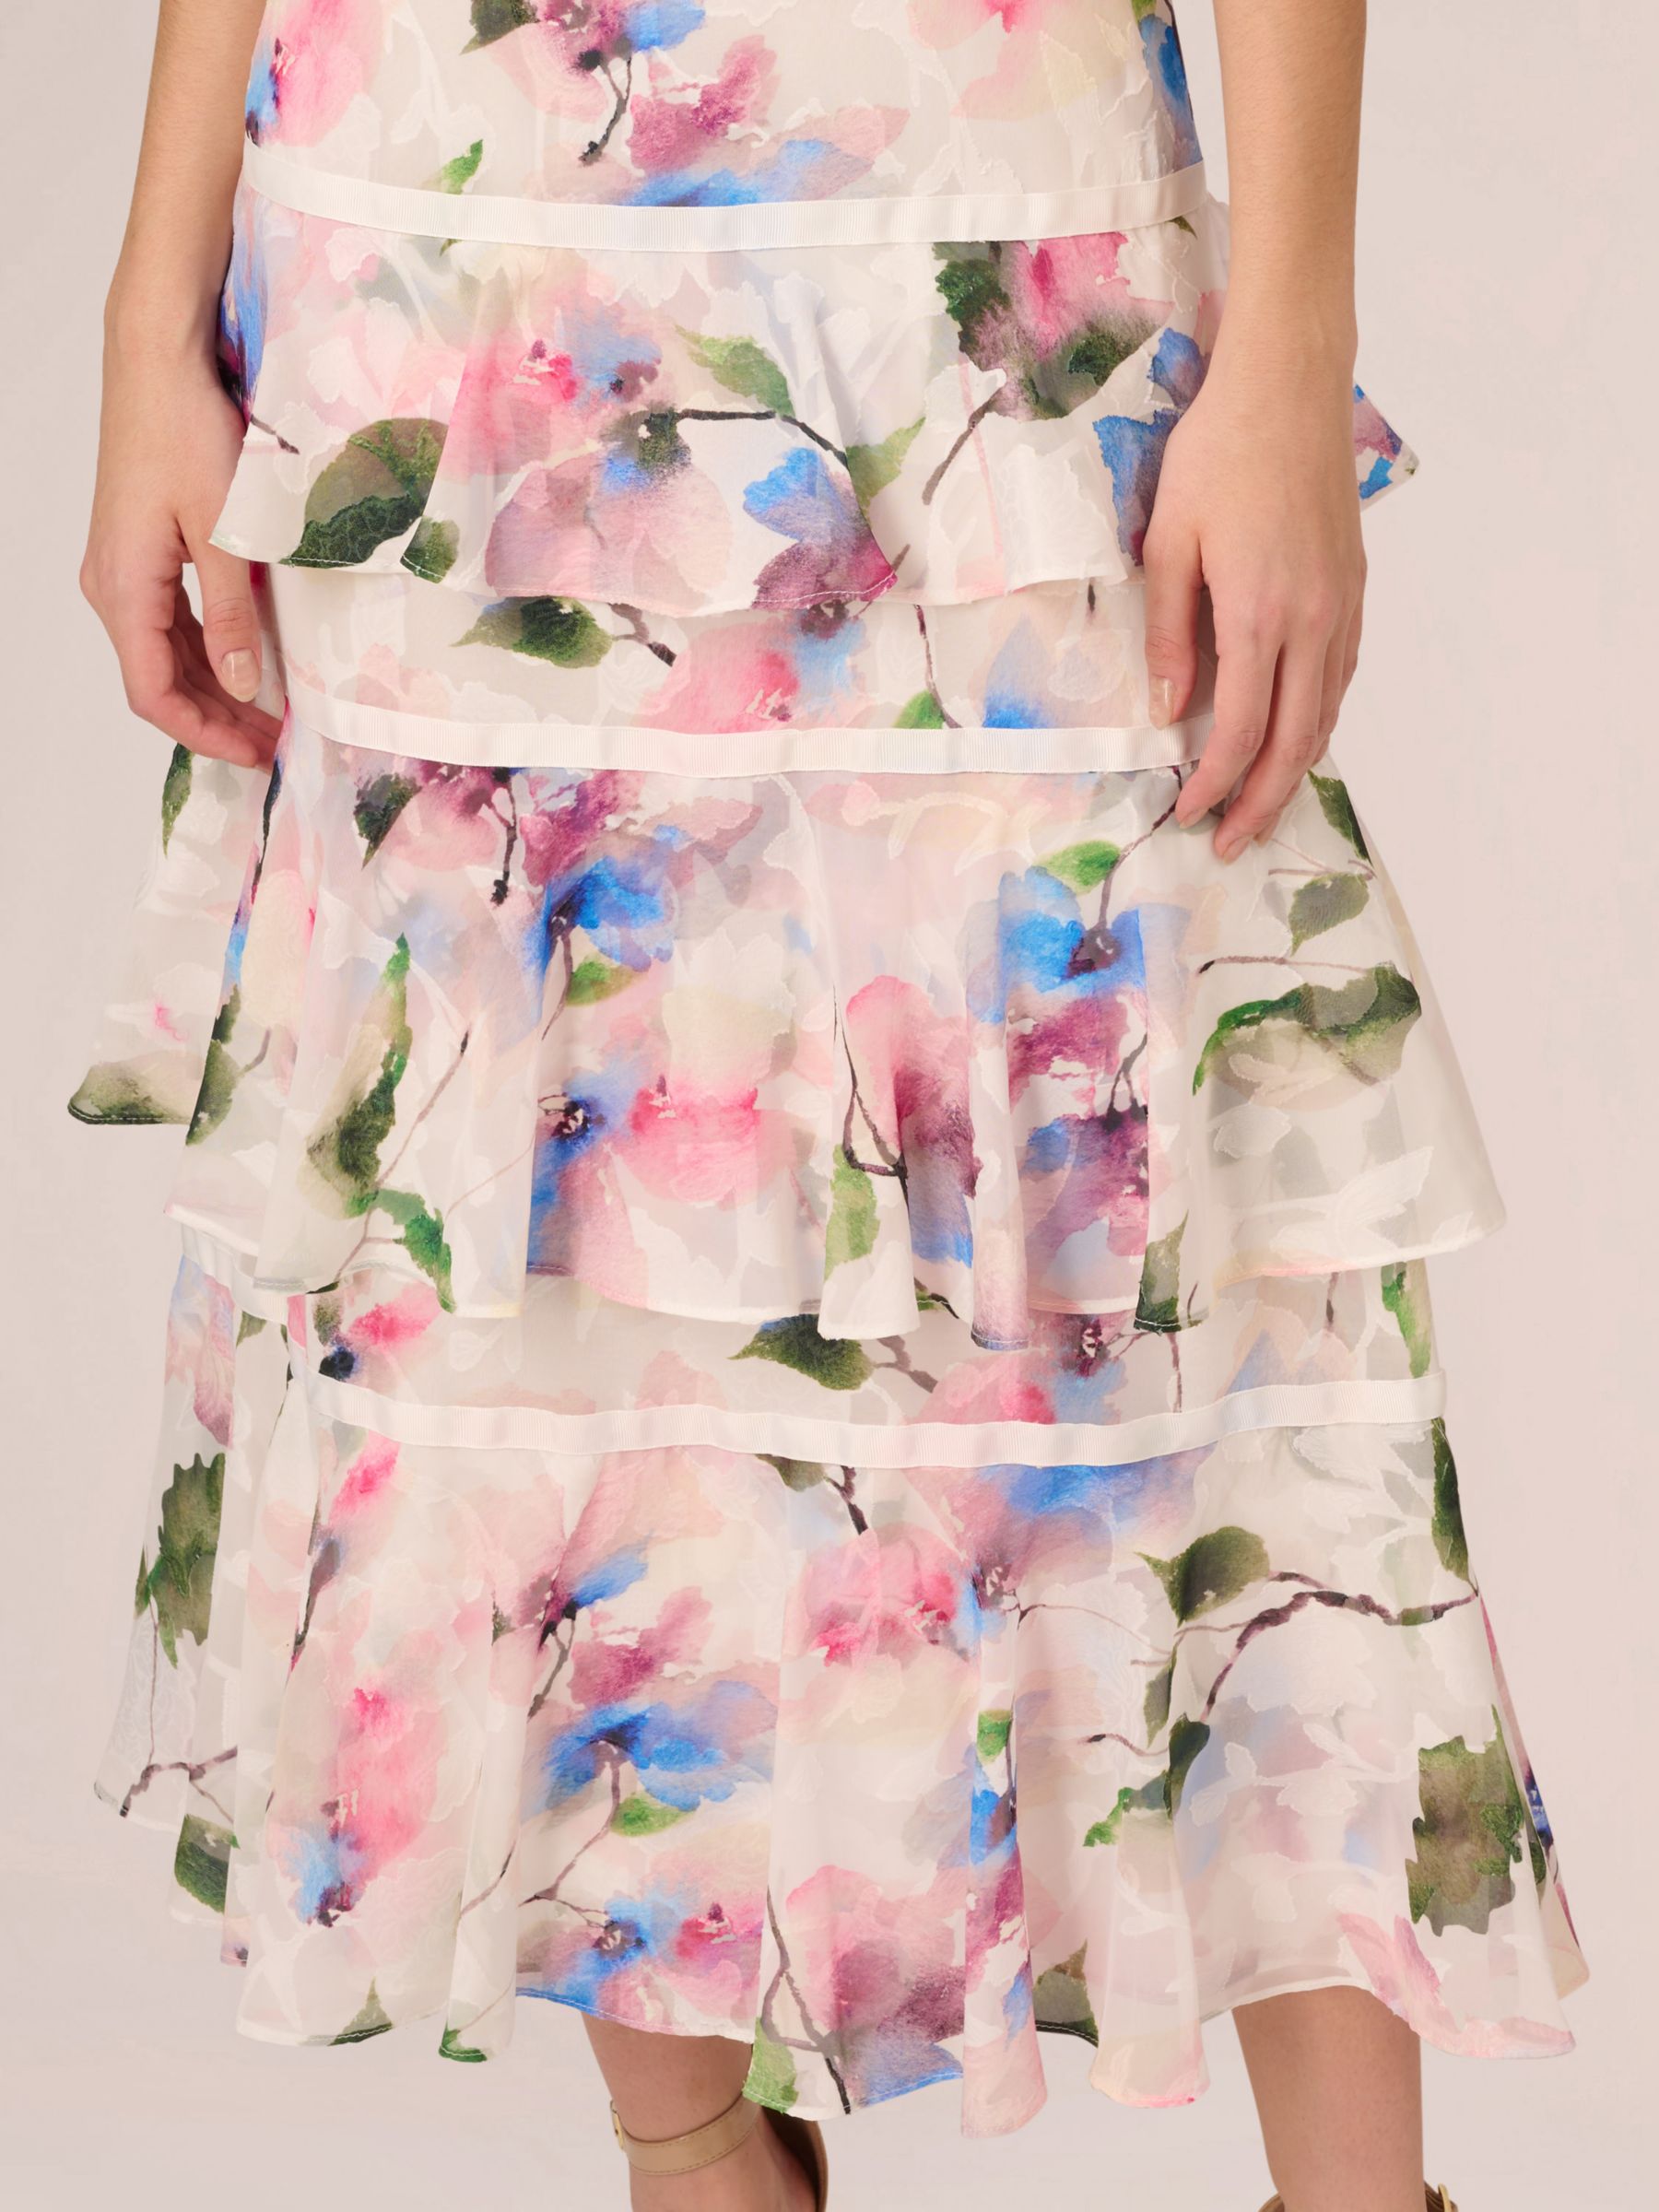 Adrianna Papell Chiffon Maxi Dress, Ivory/Pink/Multi, 6